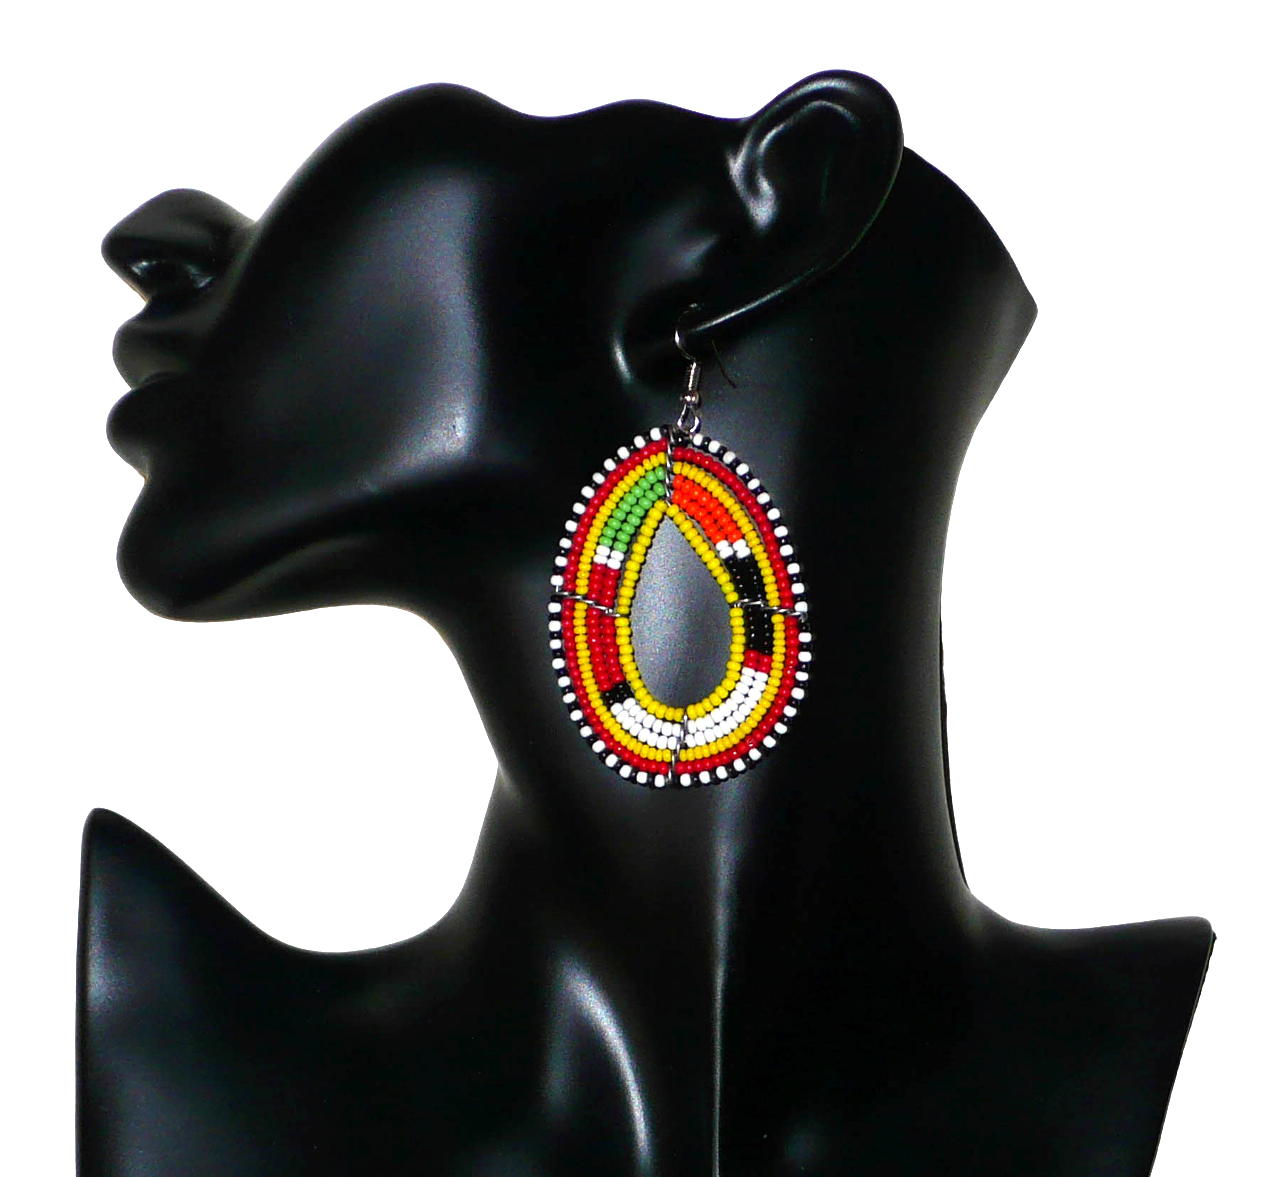 Boucles d'oreilles ethniques de tradition Massai composées de perles de rocaille jaunes et multicolores glissées sur six rangées de fils de fer montés en forme de gouttes. De taille moyenne, elles mesurent 7,5 cm de long et 4 cm de large ; ces boucles d'oreilles se portent avec des crochets en acier inoxydable sur des oreilles percées. Présentées sur un mannequin. Timeless Fineries